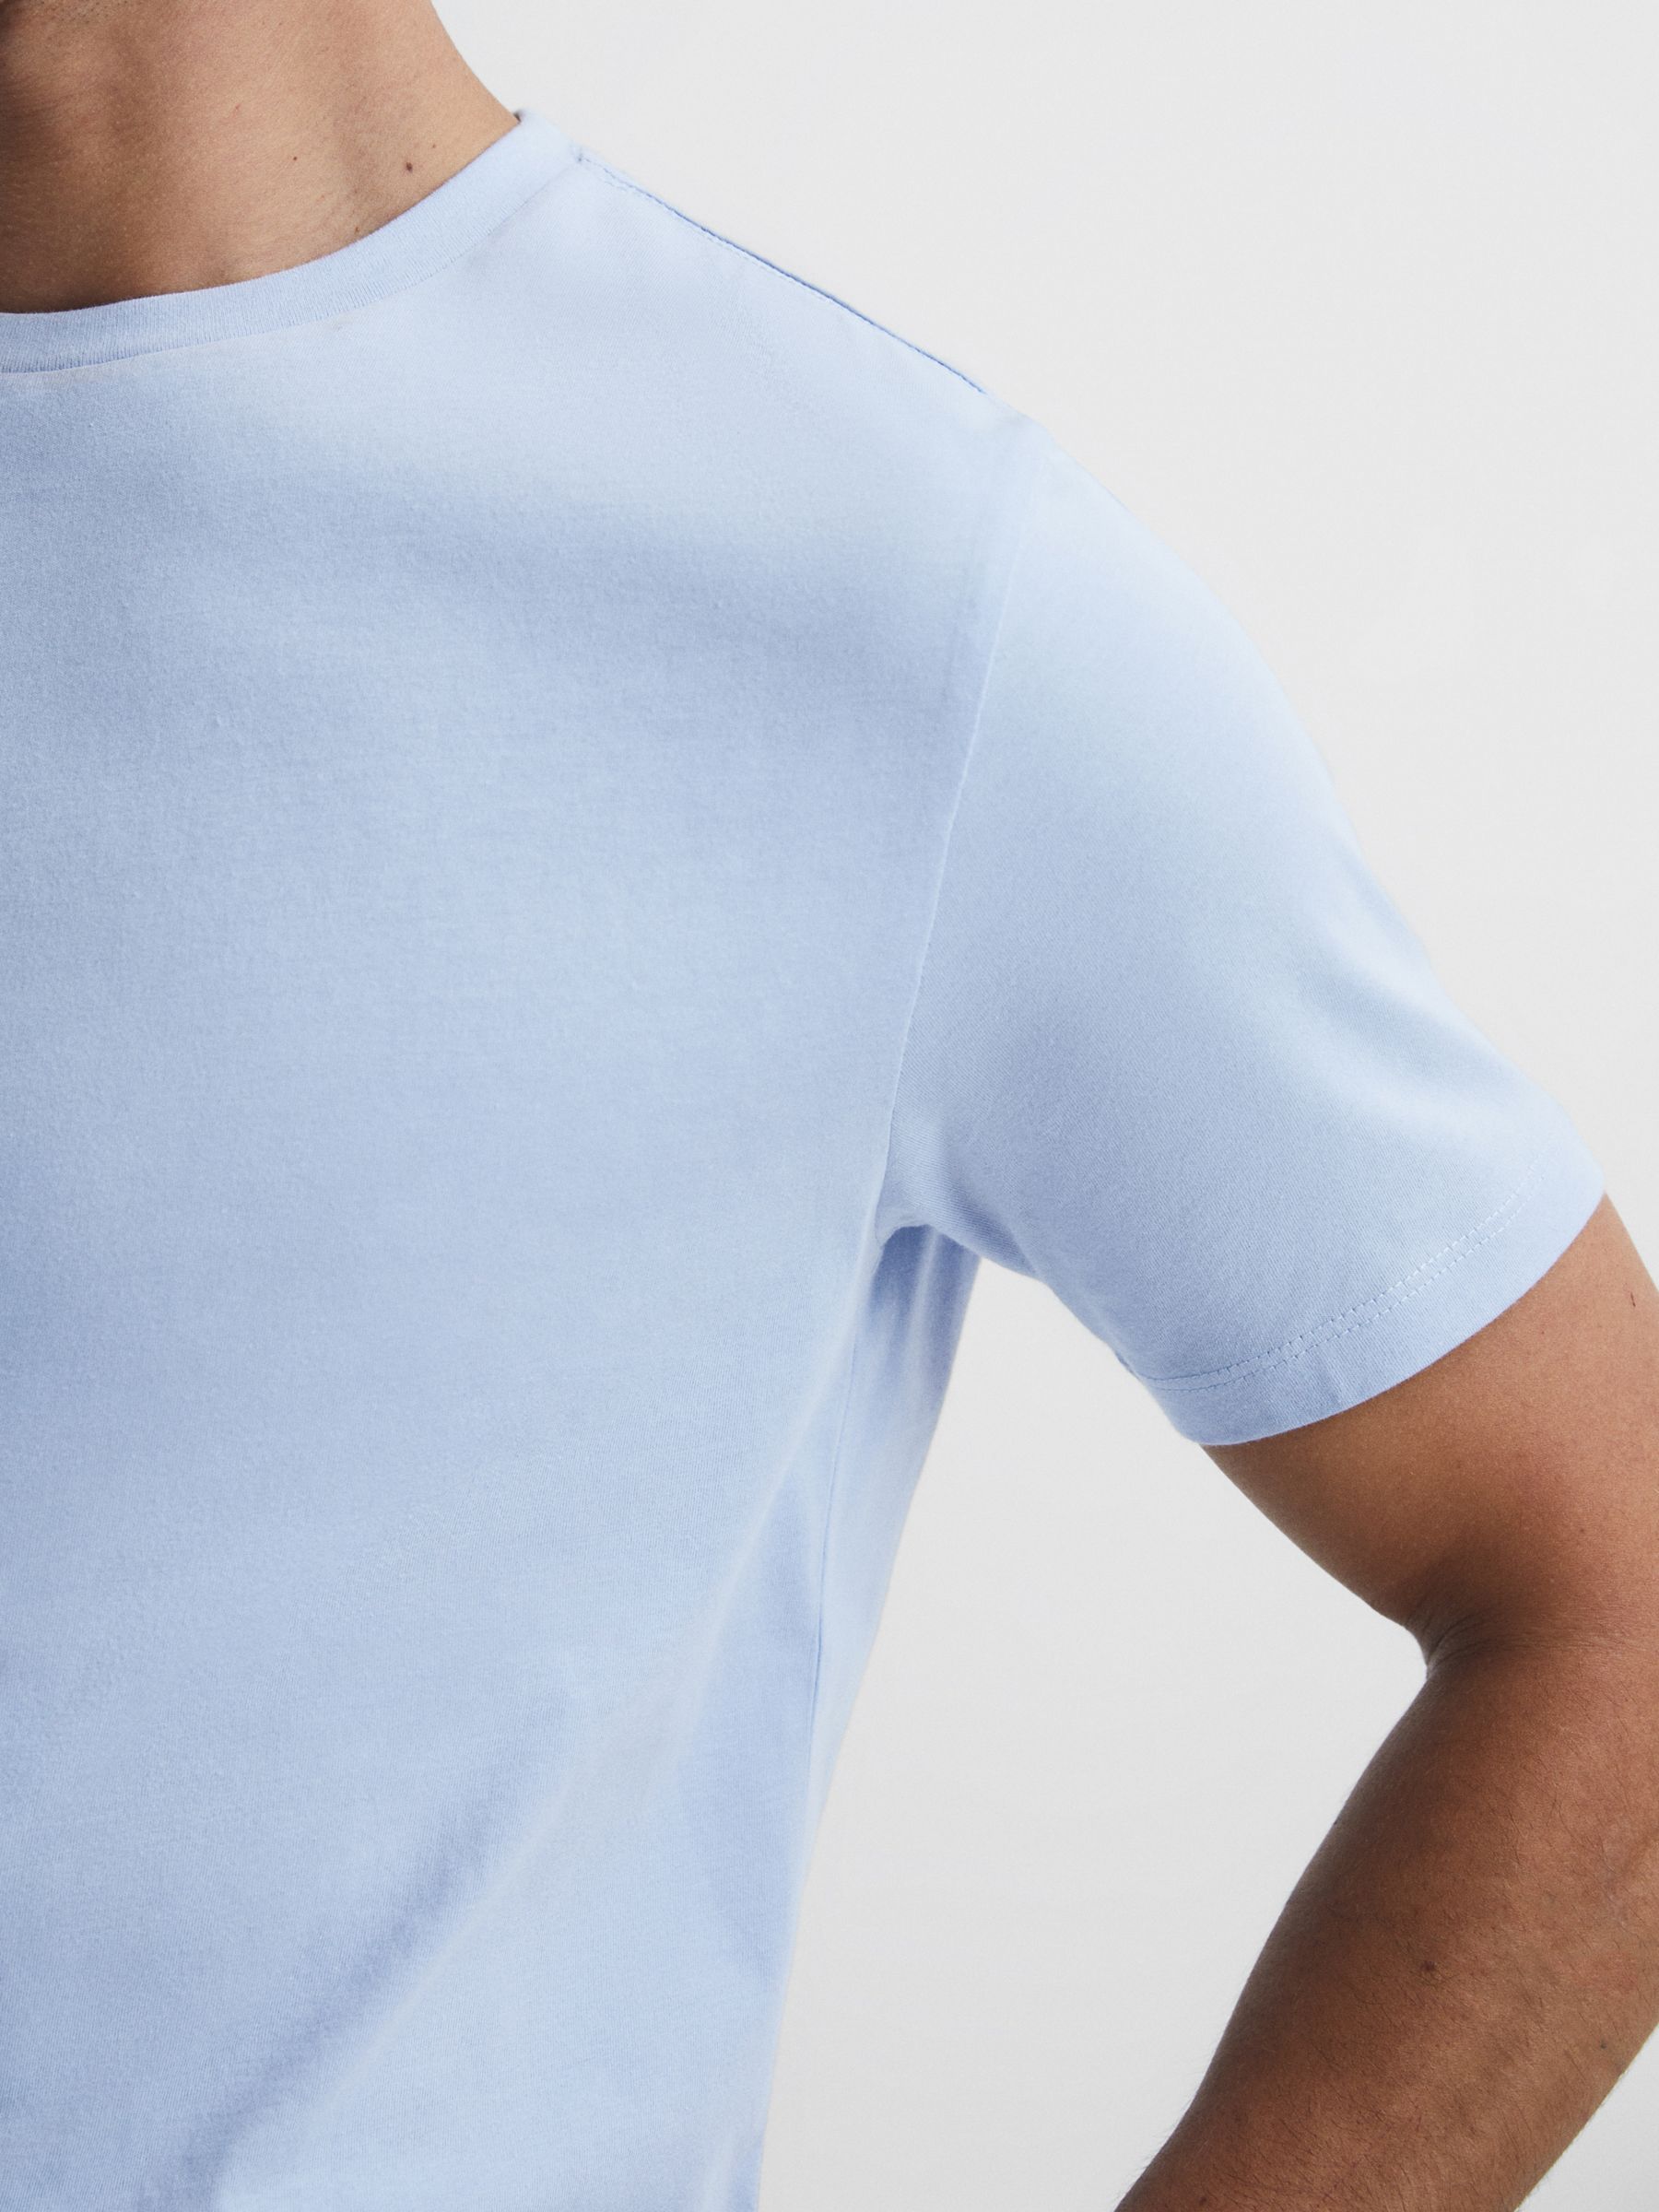 Reiss Bless Cotton Blend Crew Neck T-Shirt, Soft Blue, XS